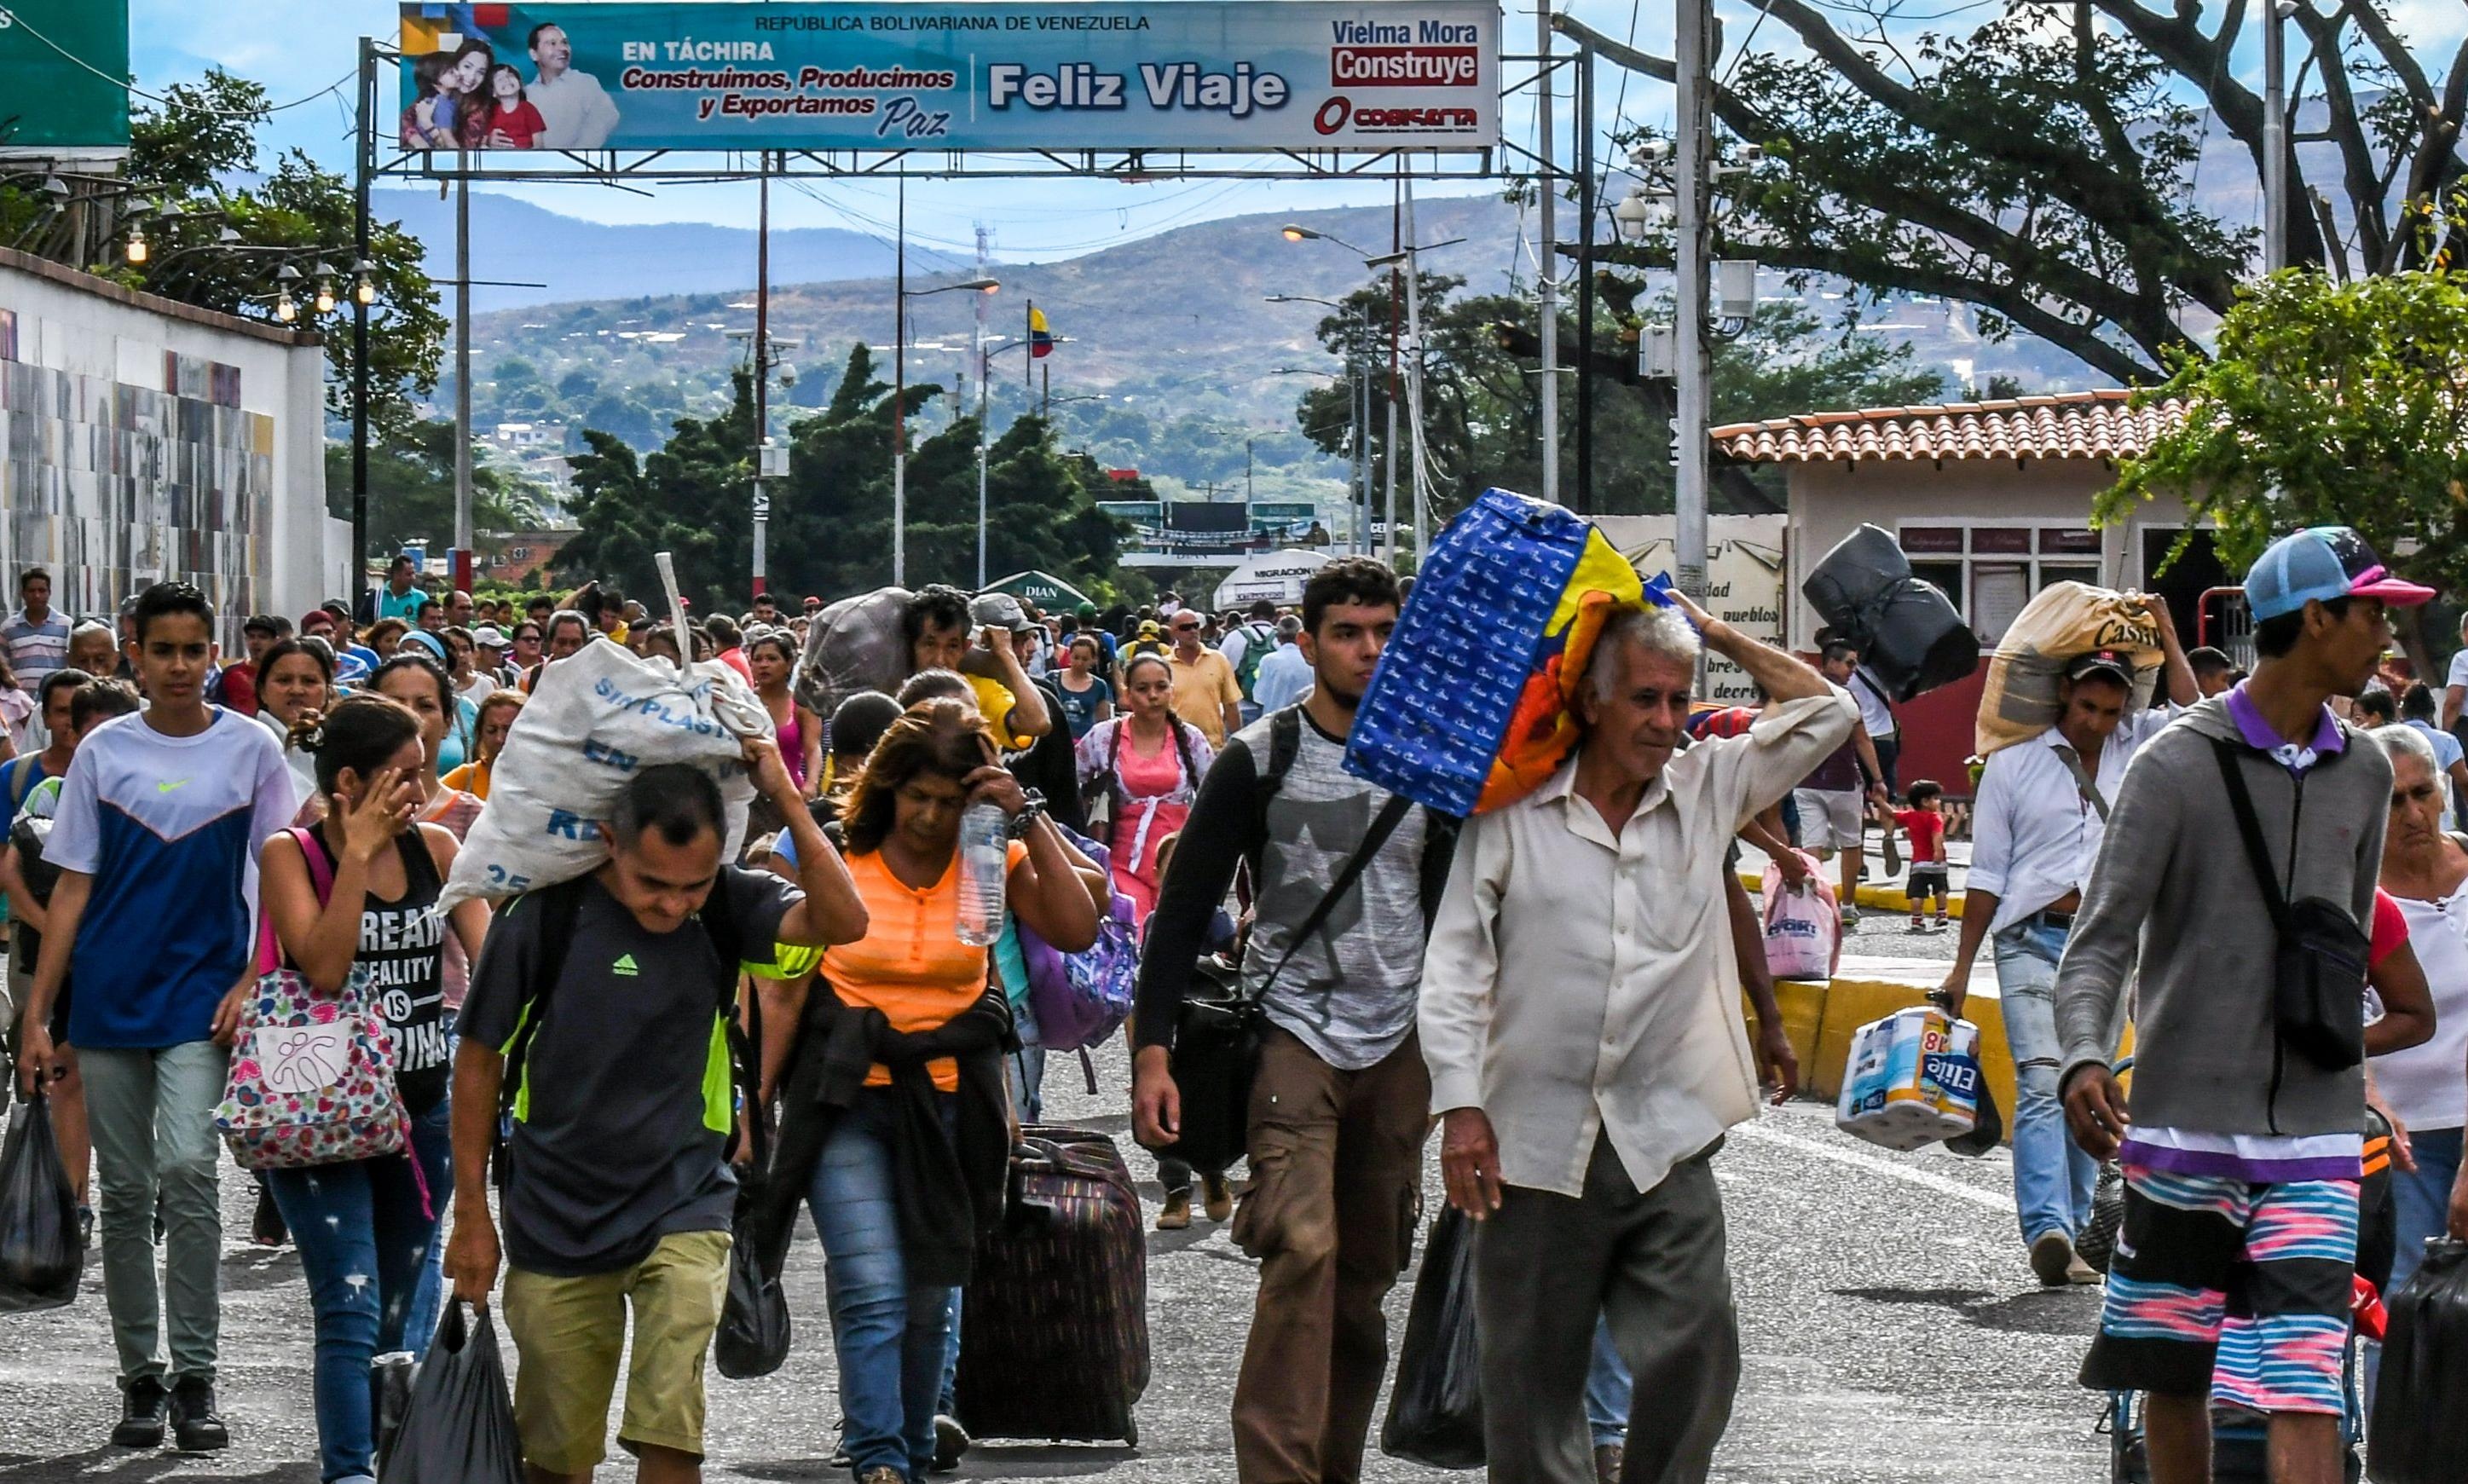 Le stime di ACNUR indicano 145.000 venezuelani in cerca di protezione internazionale soprattutto nei paesi americani.